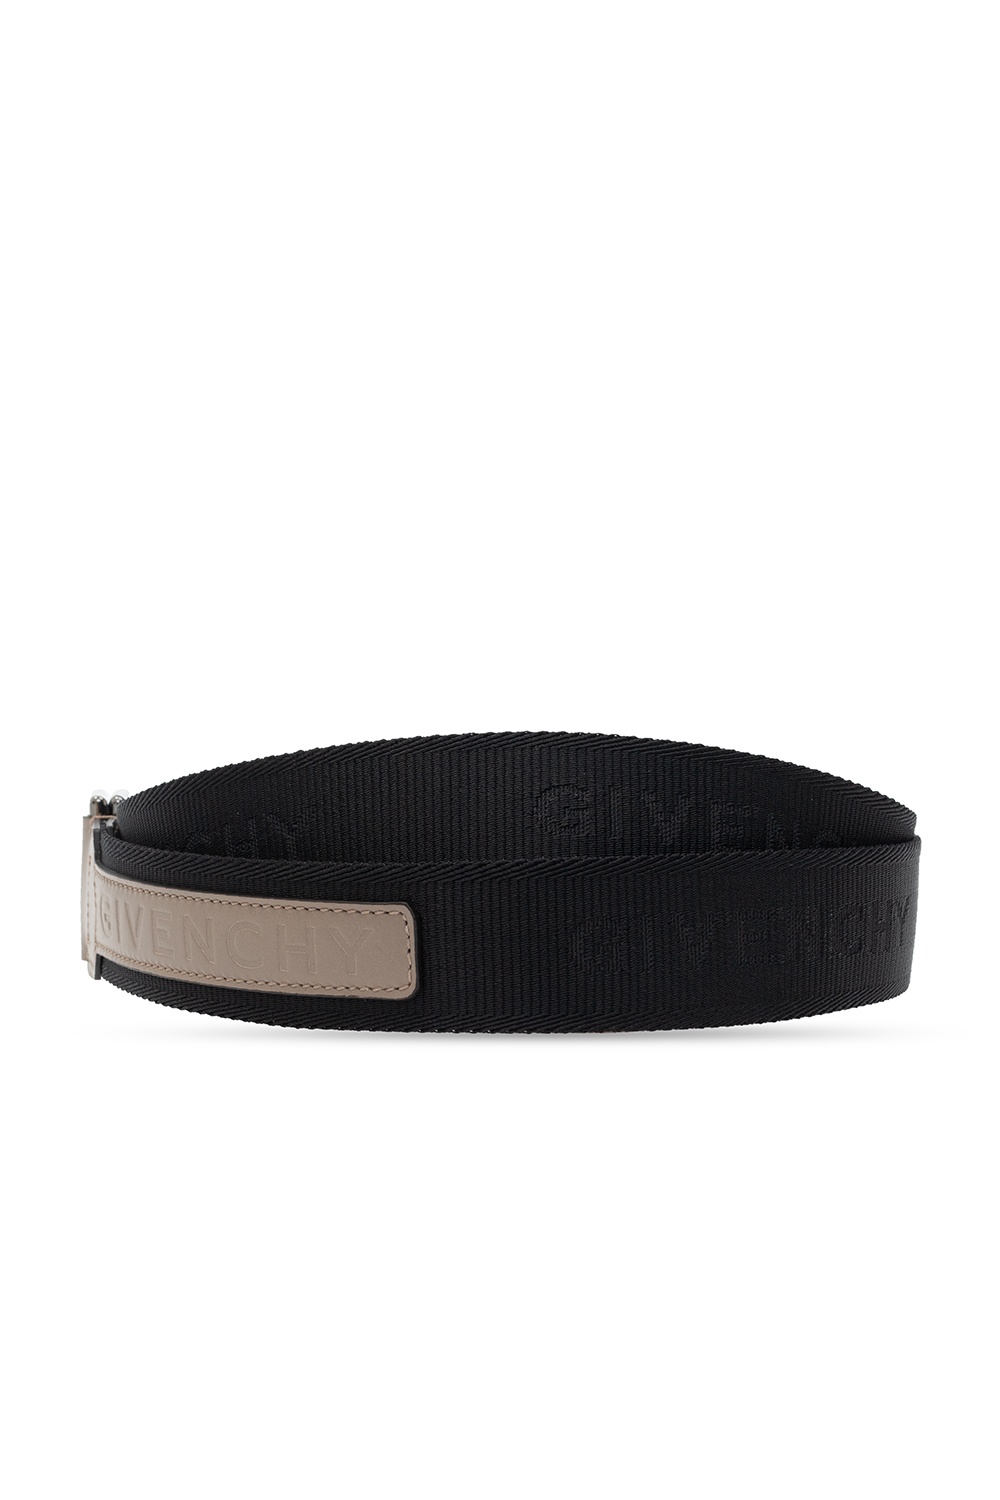 Givenchy Branded belt